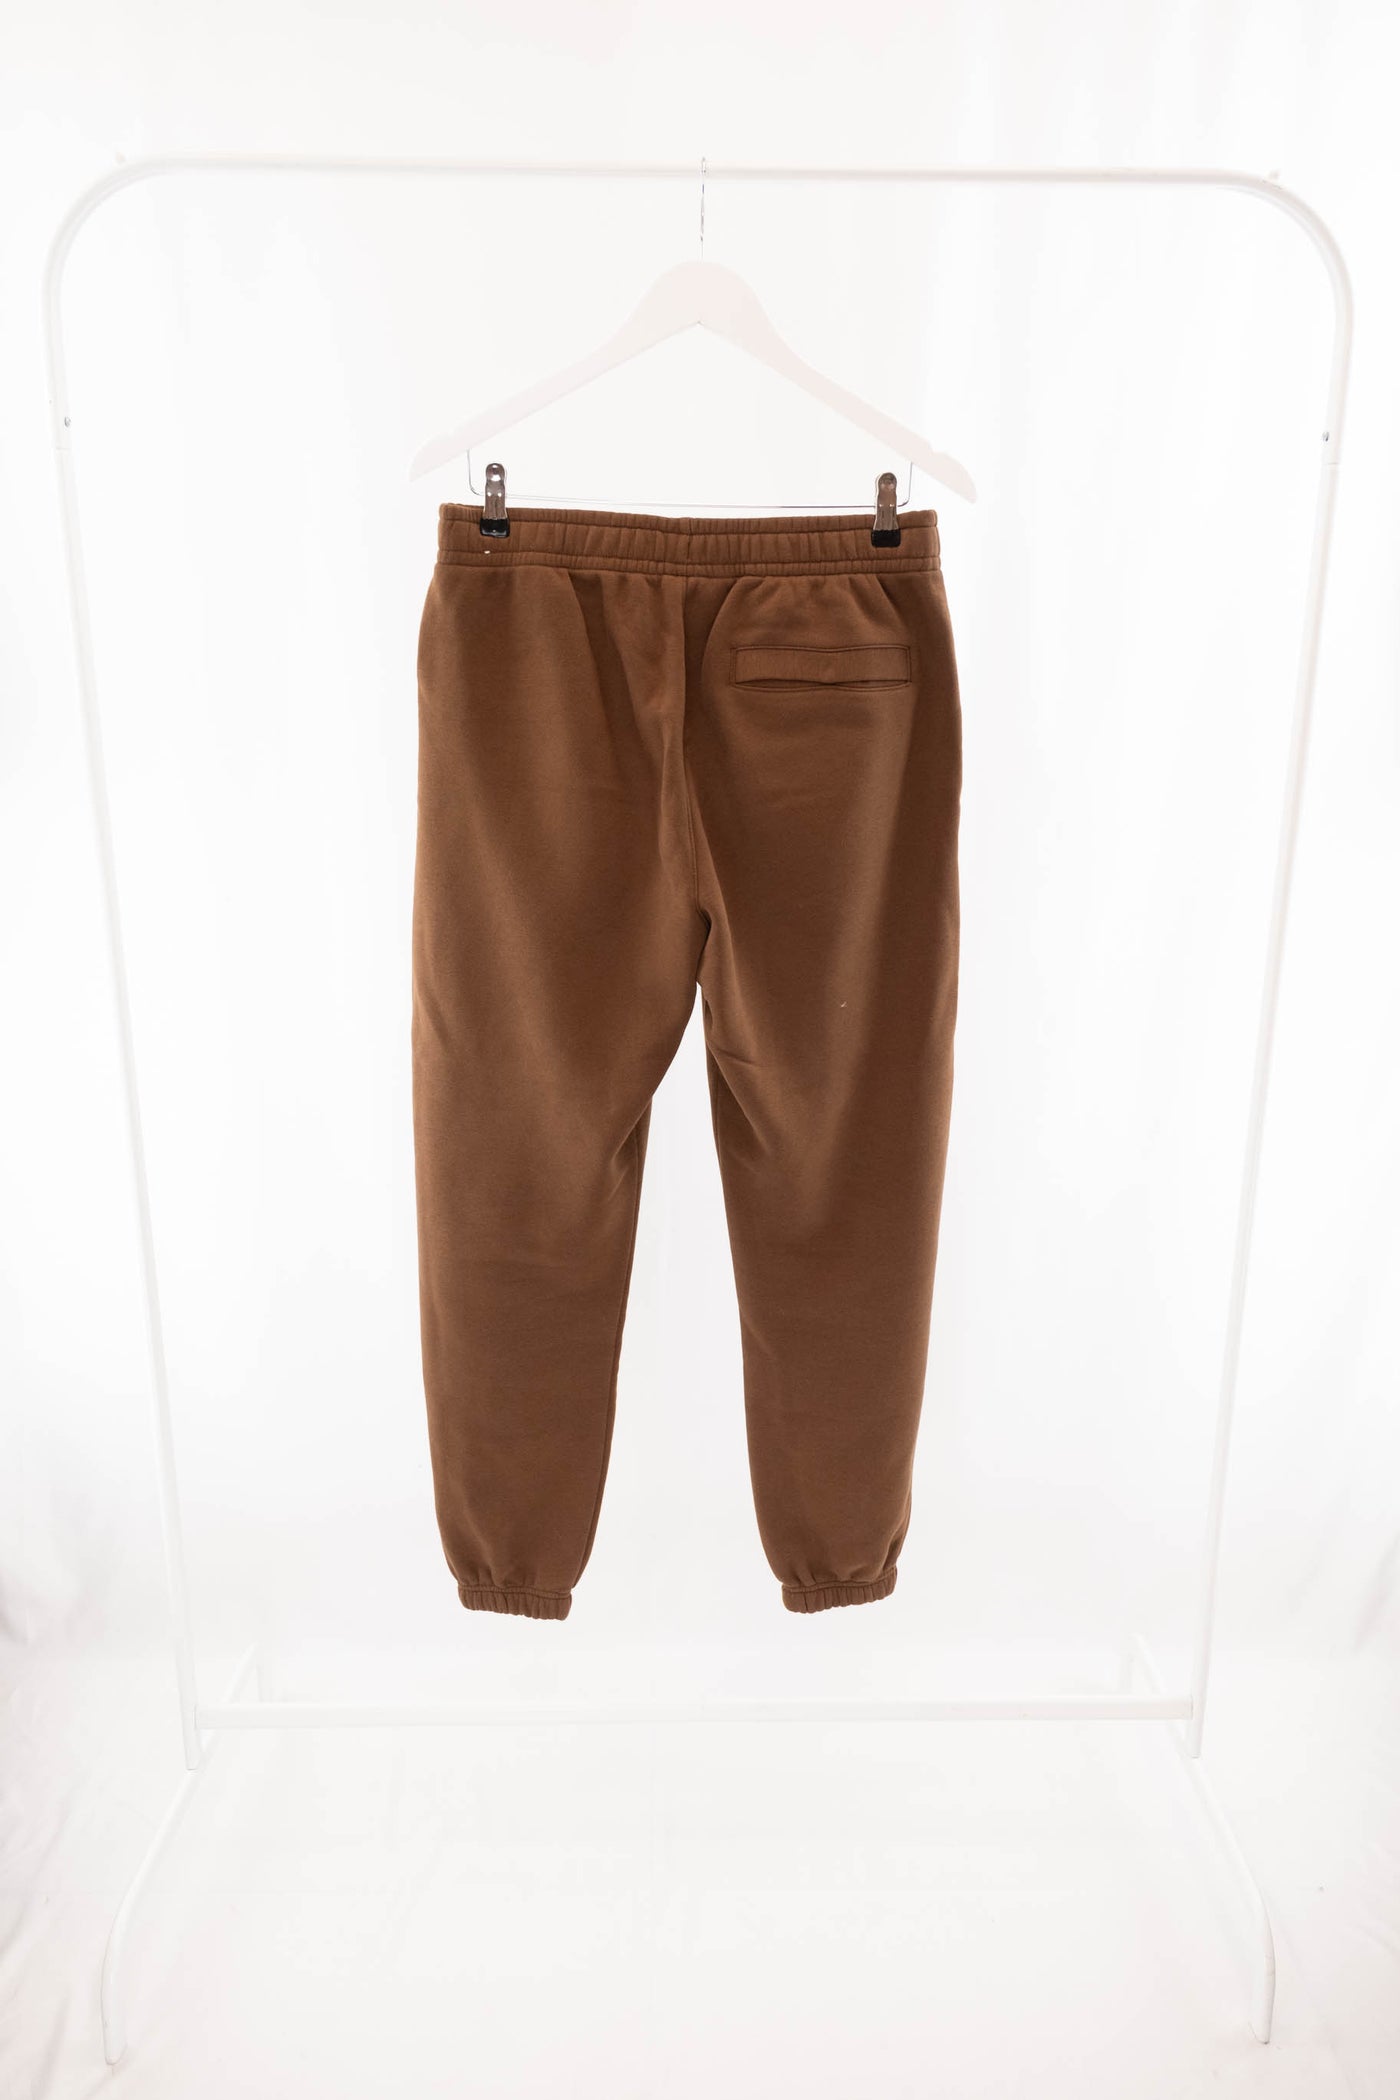 Pantalón chándal marrón